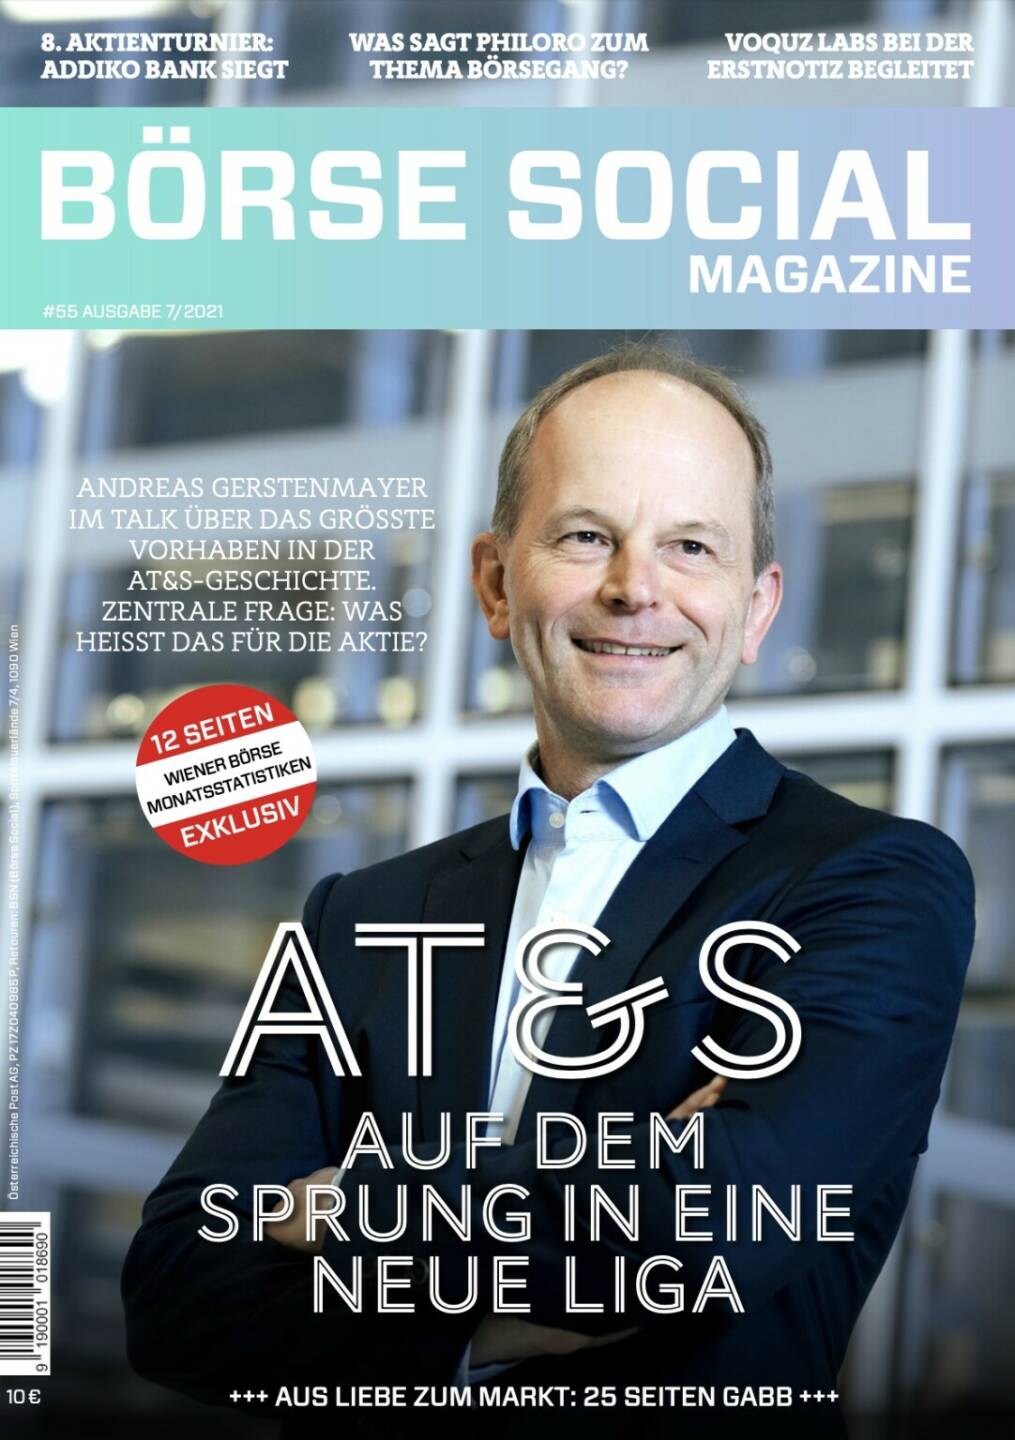 Magazine #55 - Juli 2021: AT&S auf dem Sprung in eine neue Liga - Andreas Gerstenmayer im Talk über das größte 
Vorhaben in der AT&S-Geschichte. Zentrale Frage: Was heisst das für die Aktie?